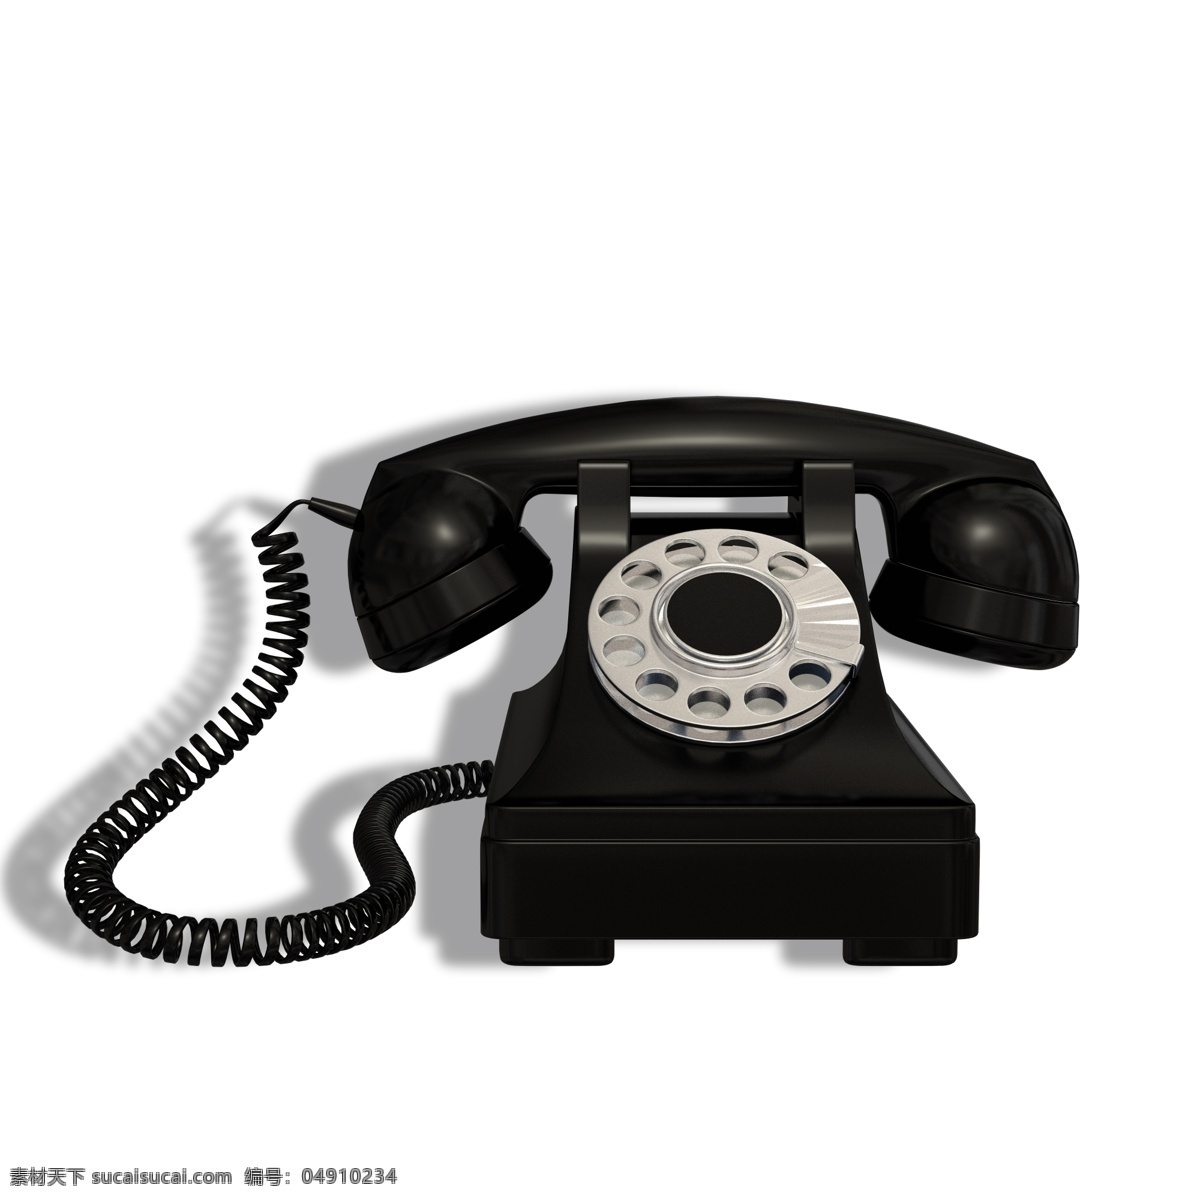 家用电器 老式 电话 古董电话 老电话 通信 通话 交流工具 日常信息传递 信息传递 家用产品